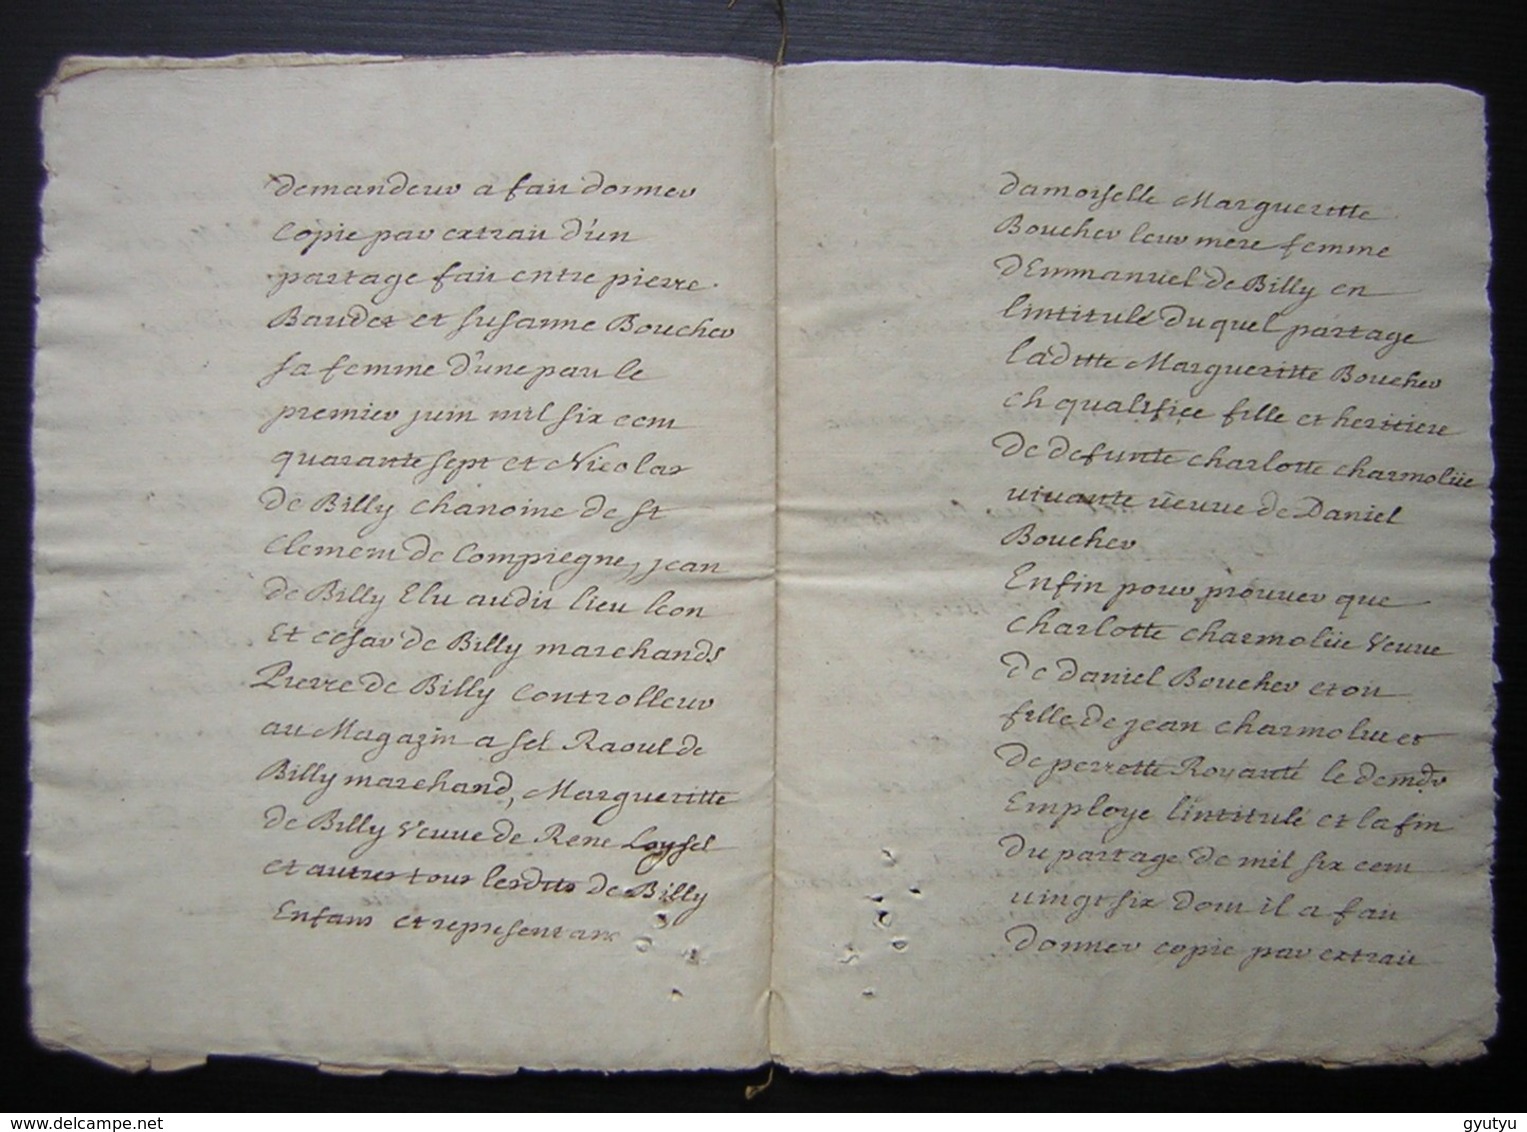 1740 preuves de la généalogie de Gabriel François Daraine lieutenant général au baillage de Compiègne, conseiller du Roi